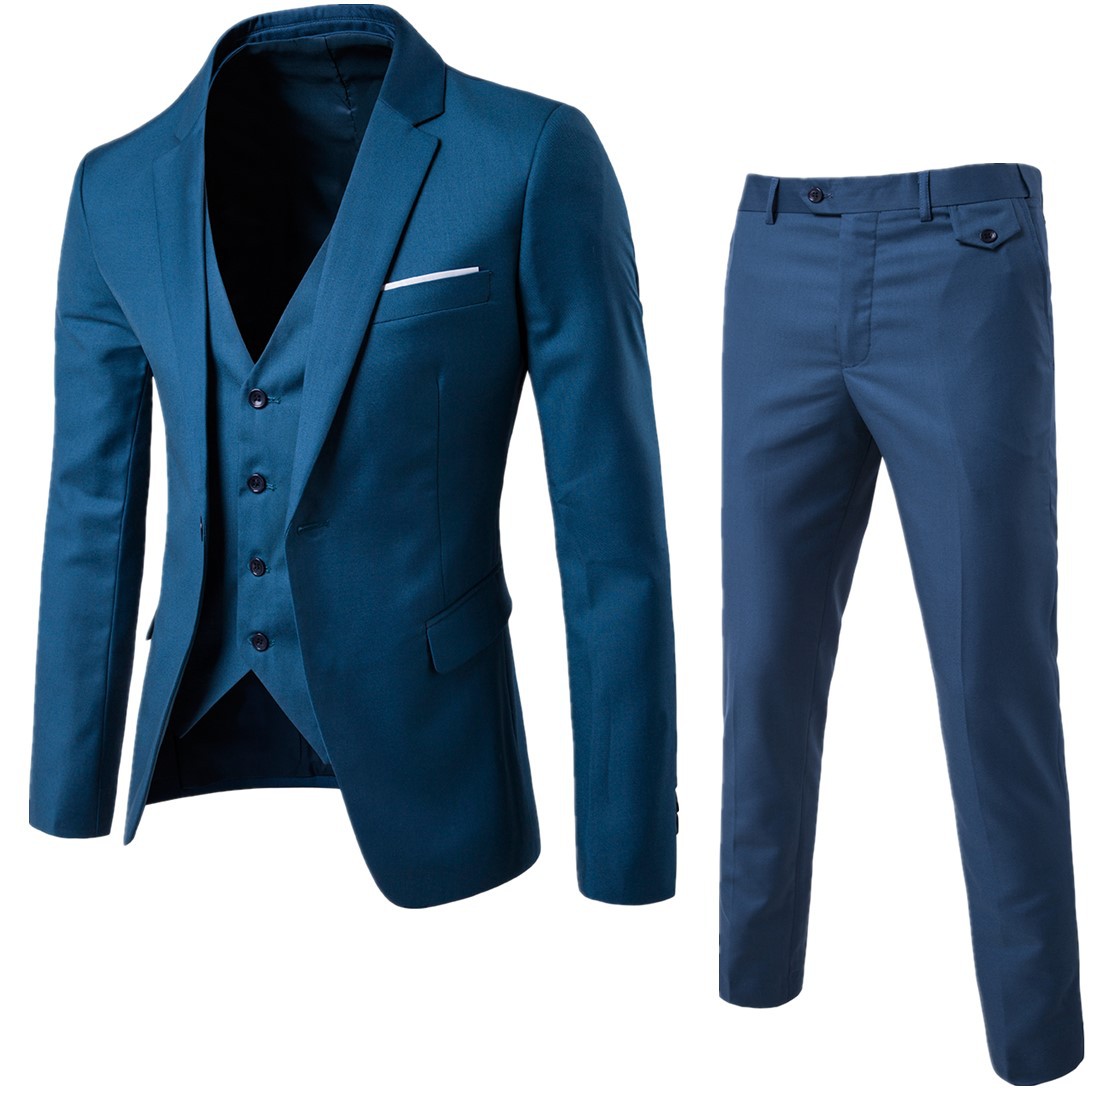 2020 new men's Plaid slim suit three piece business men's fashion banquet suit